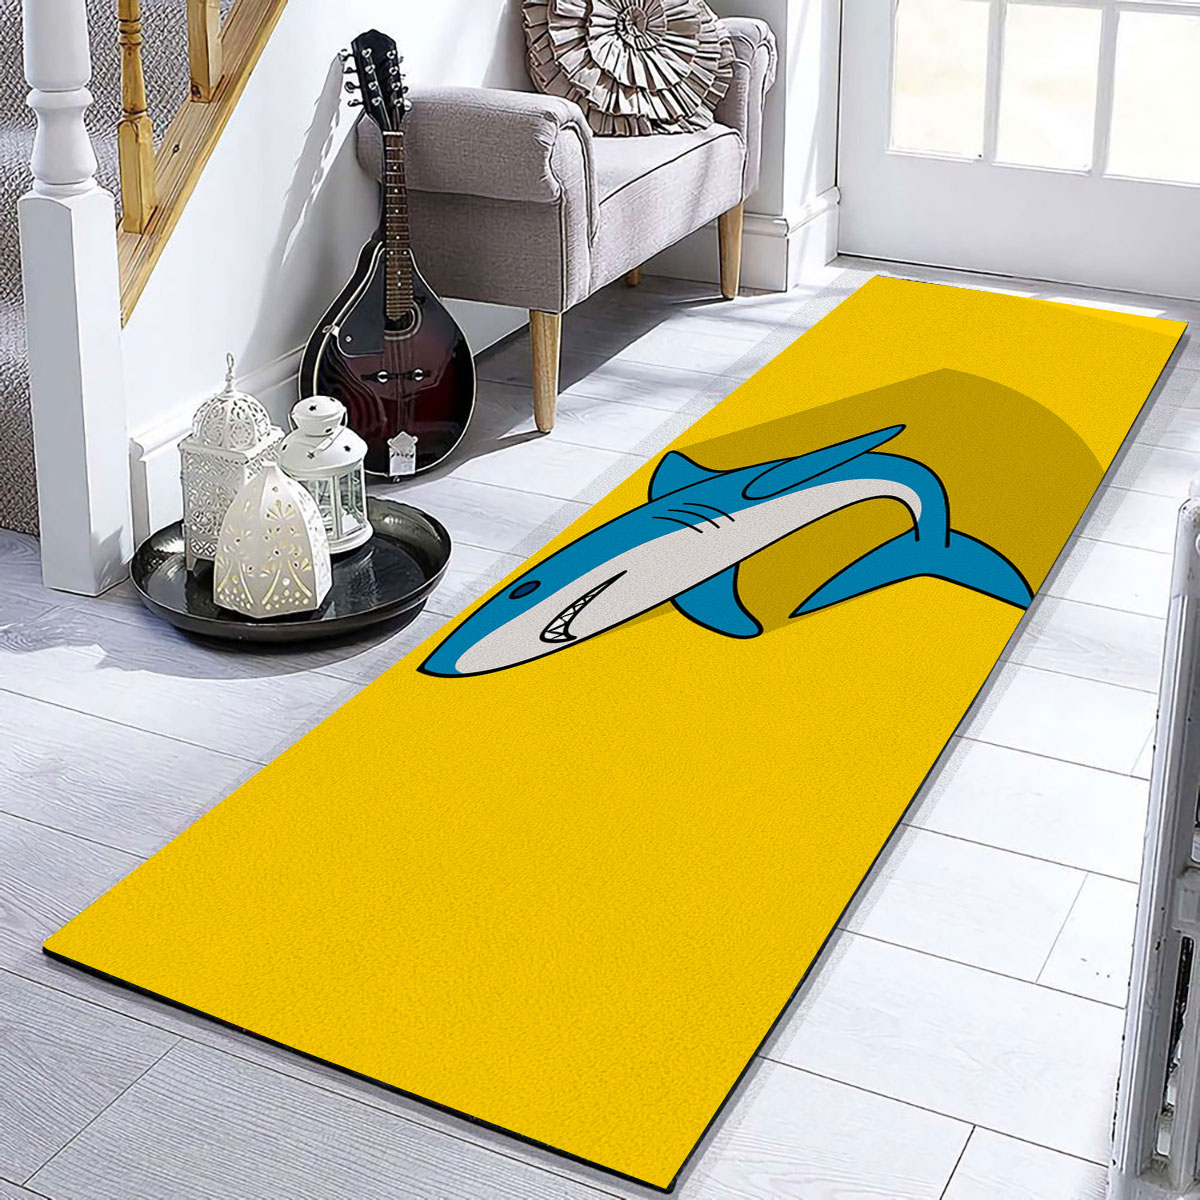 Great White Shark On Yellow Runner Carpet